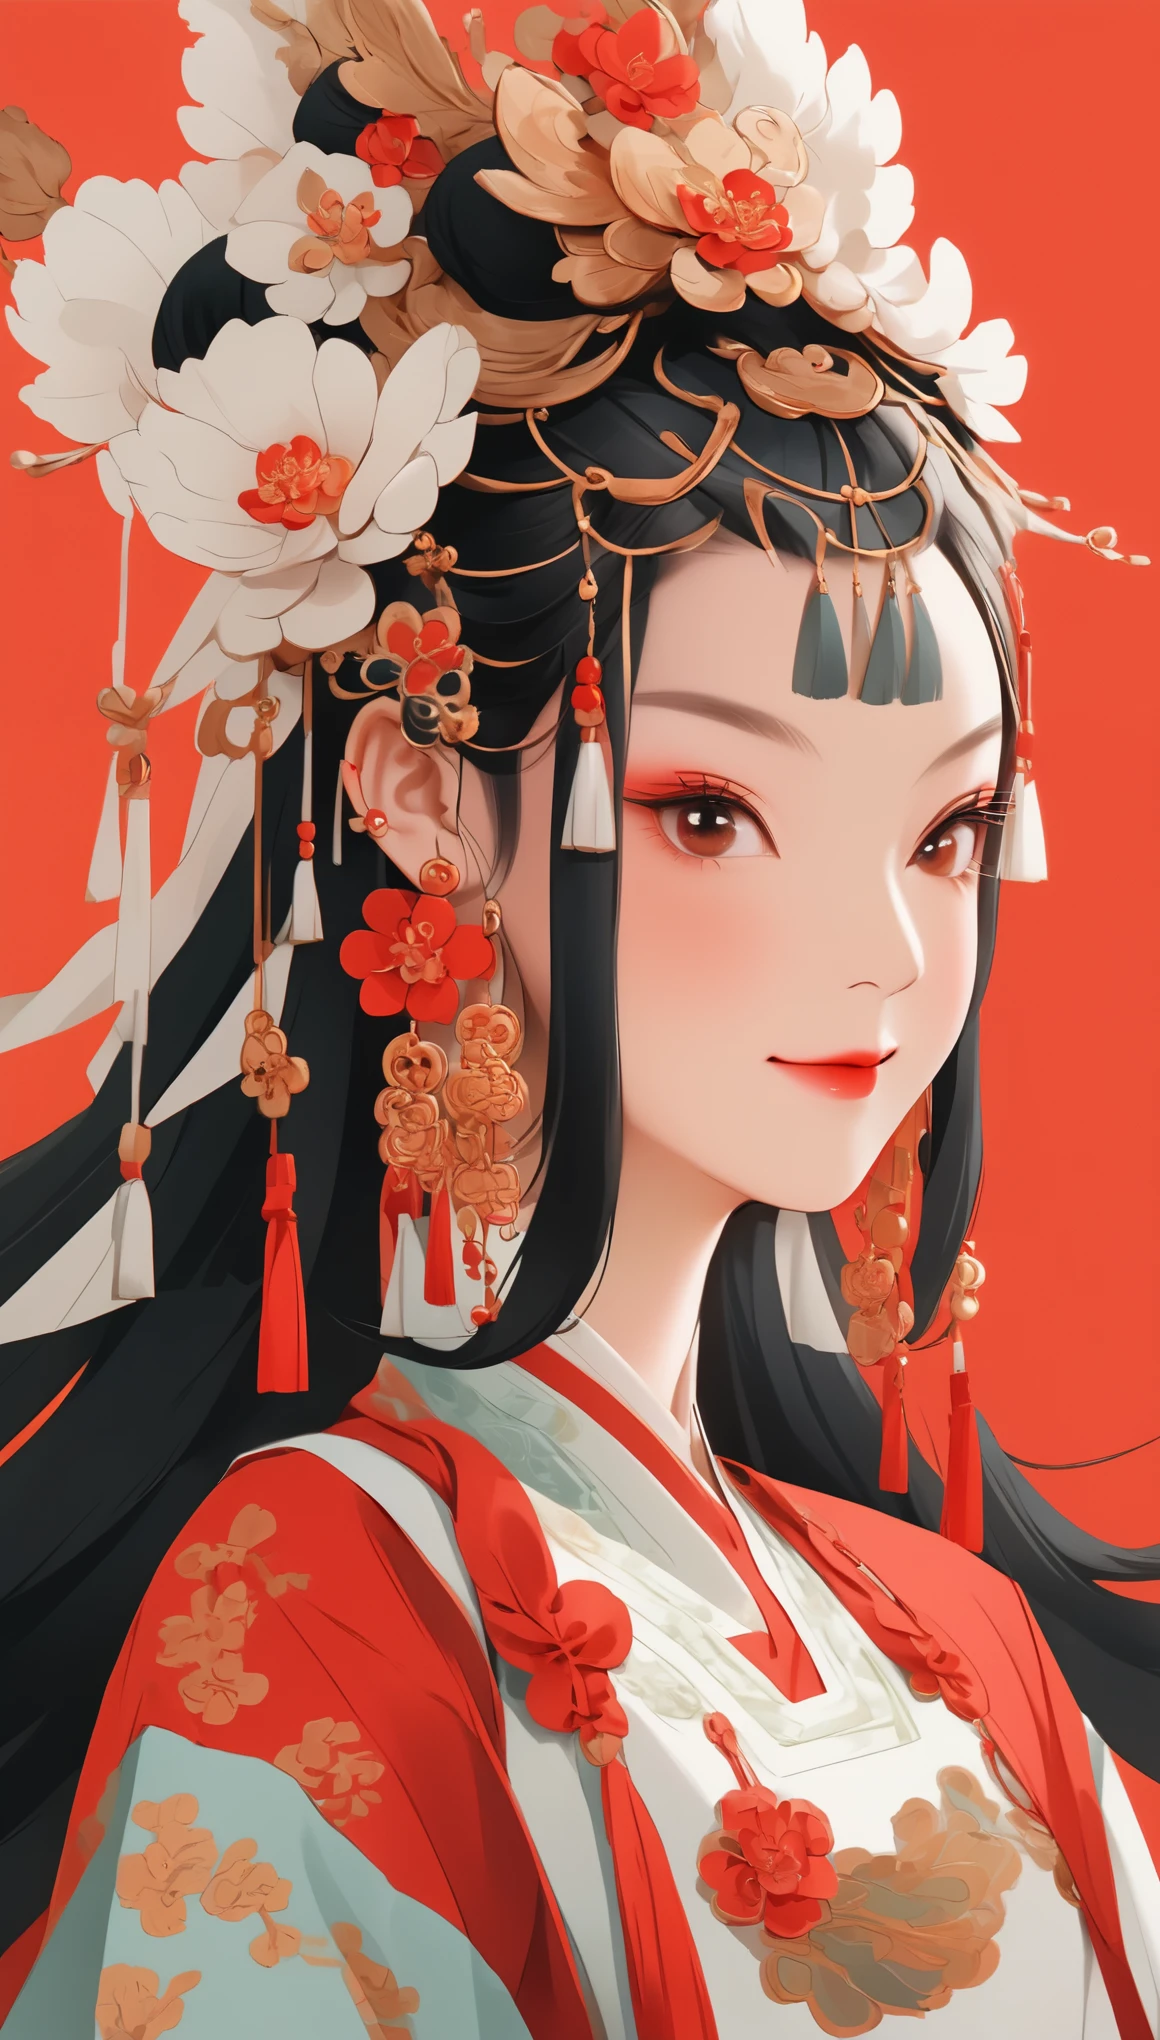 전신，귀여운 중국 소녀의 평면 그림 스타일, 이중으로 땋은 땋은 머리 검은 머리, 웃고있는, 귀걸이 착용, 확대，현대적인 미니멀리스트，빨간색 배경